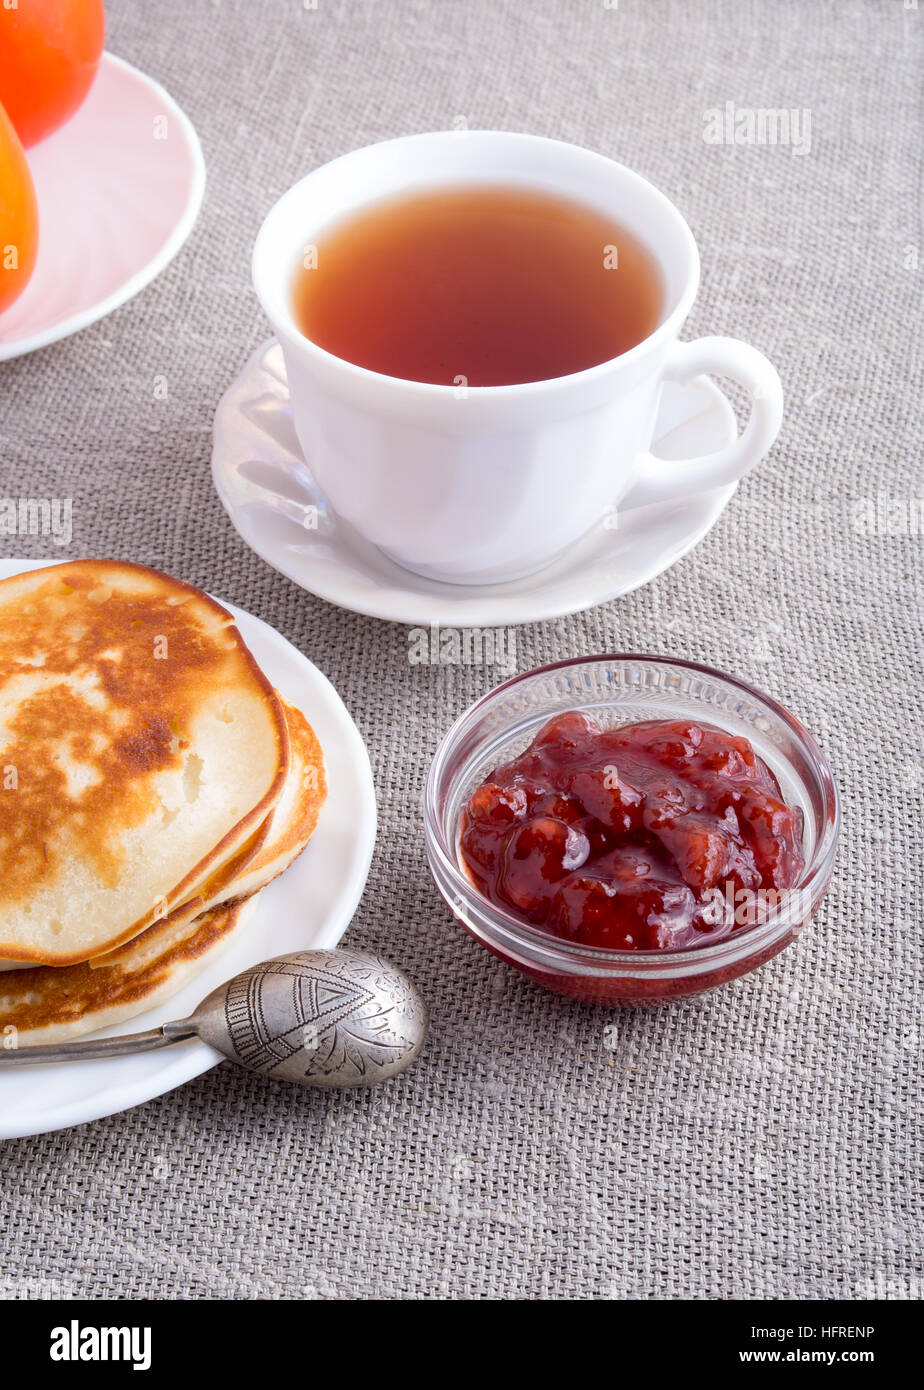 Ein Teller mit heißen Pfannkuchen mit Vintage Silber Löffel, eine Tasse Tee und eine Glasschale mit Erdbeer-Marmelade auf einem grauen Textil-Hintergrund Stockfoto